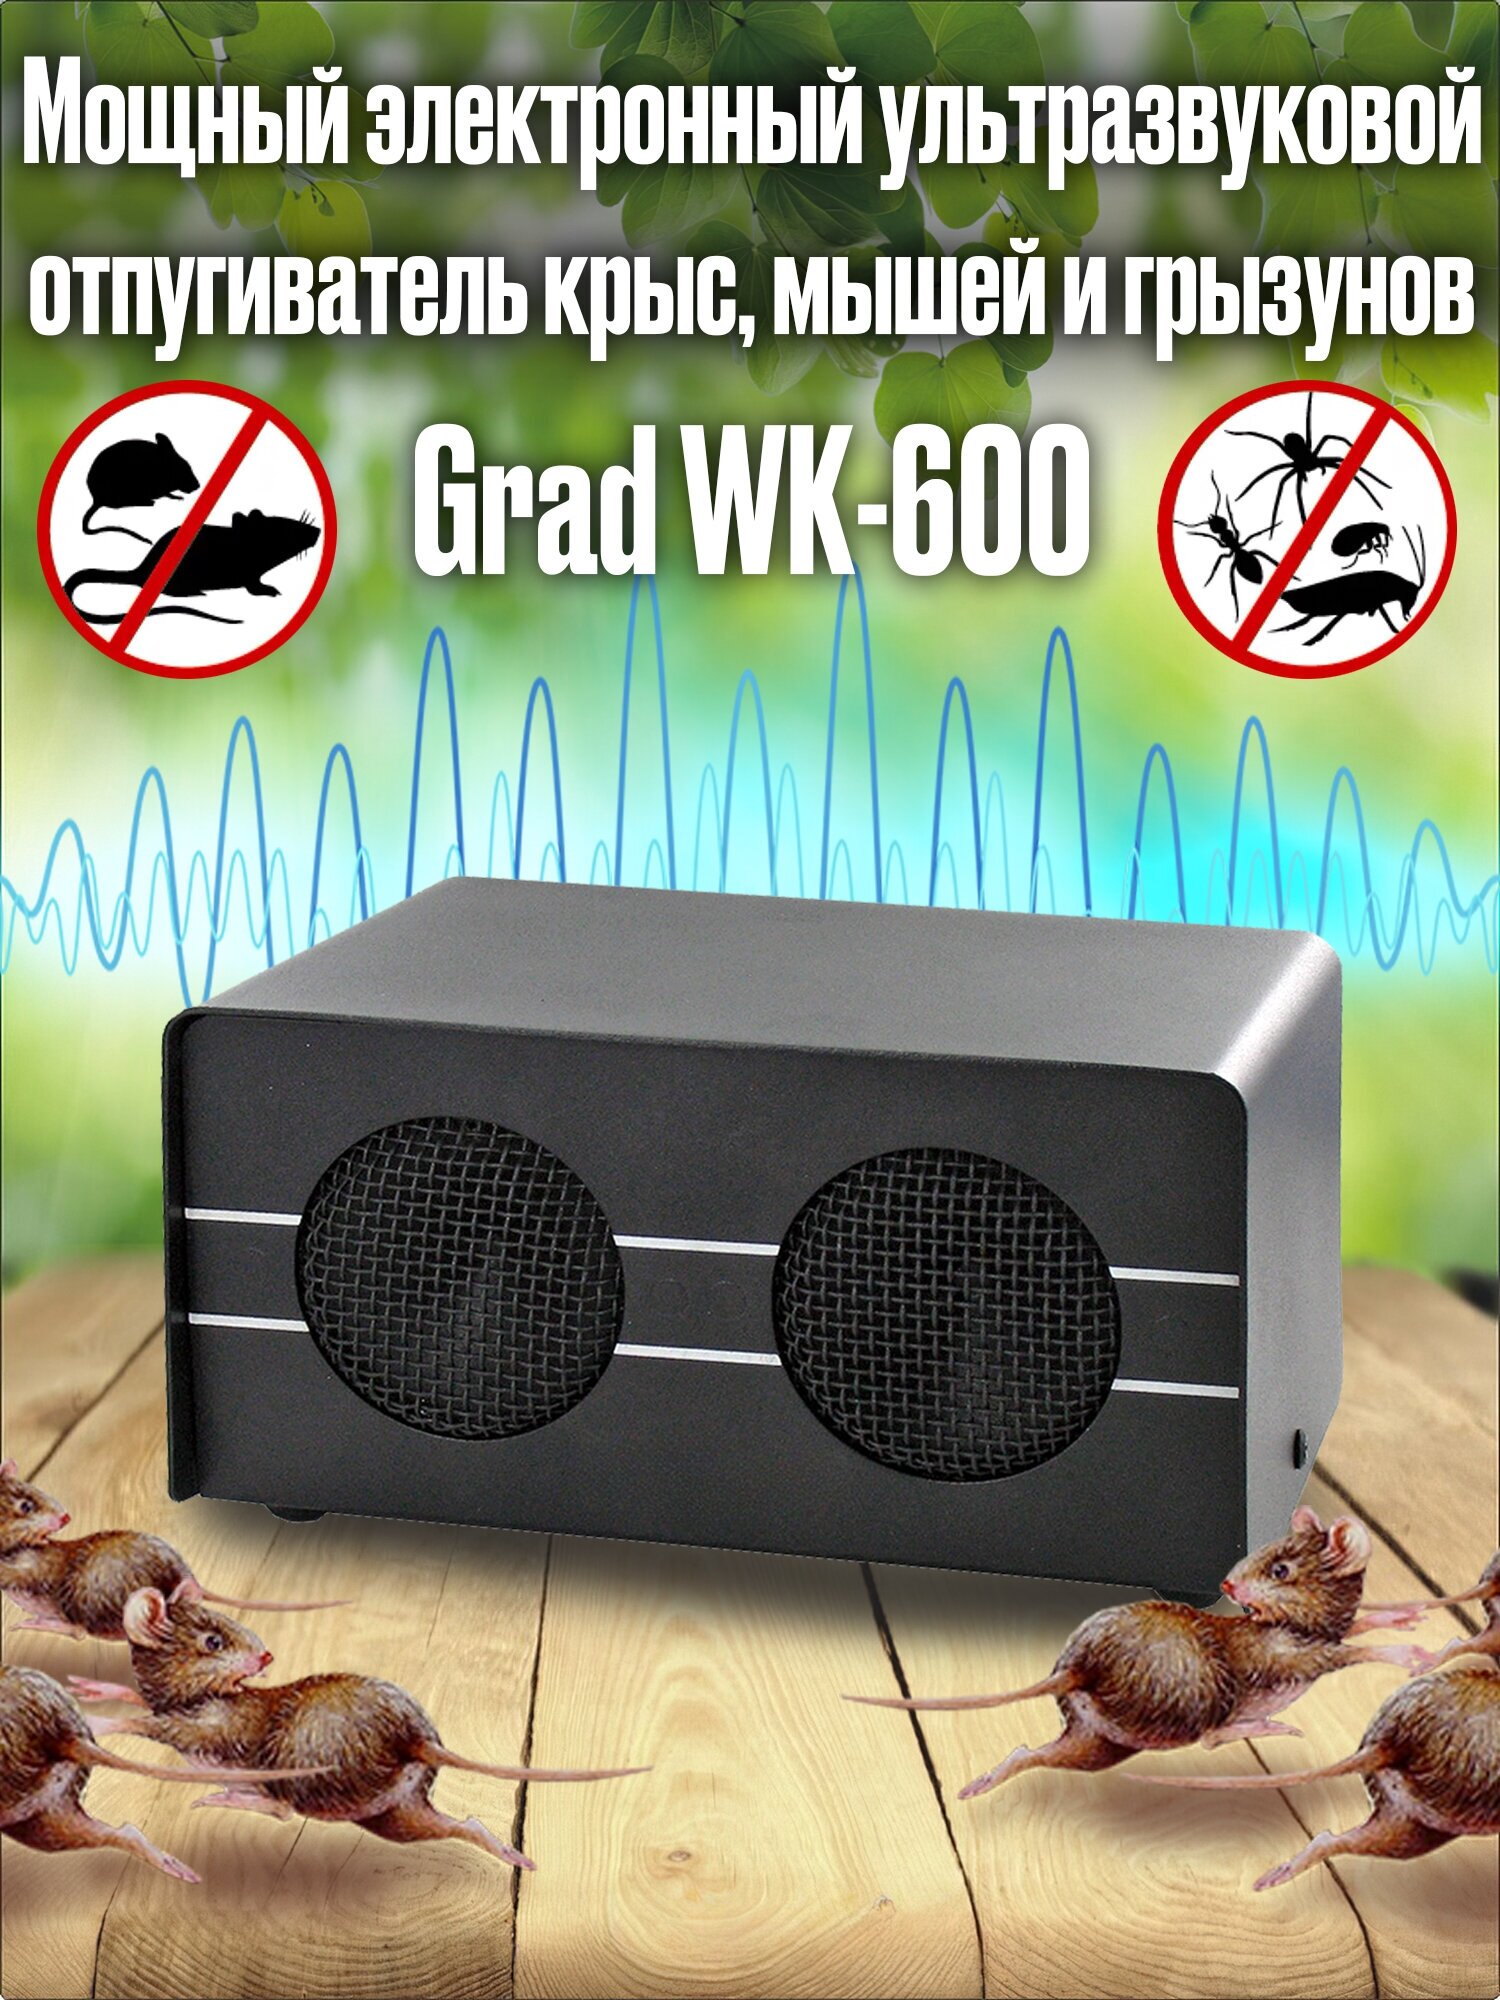 Мощный электронный ультразвуковой отпугиватель крыс мышей и грызунов Grad WK-600